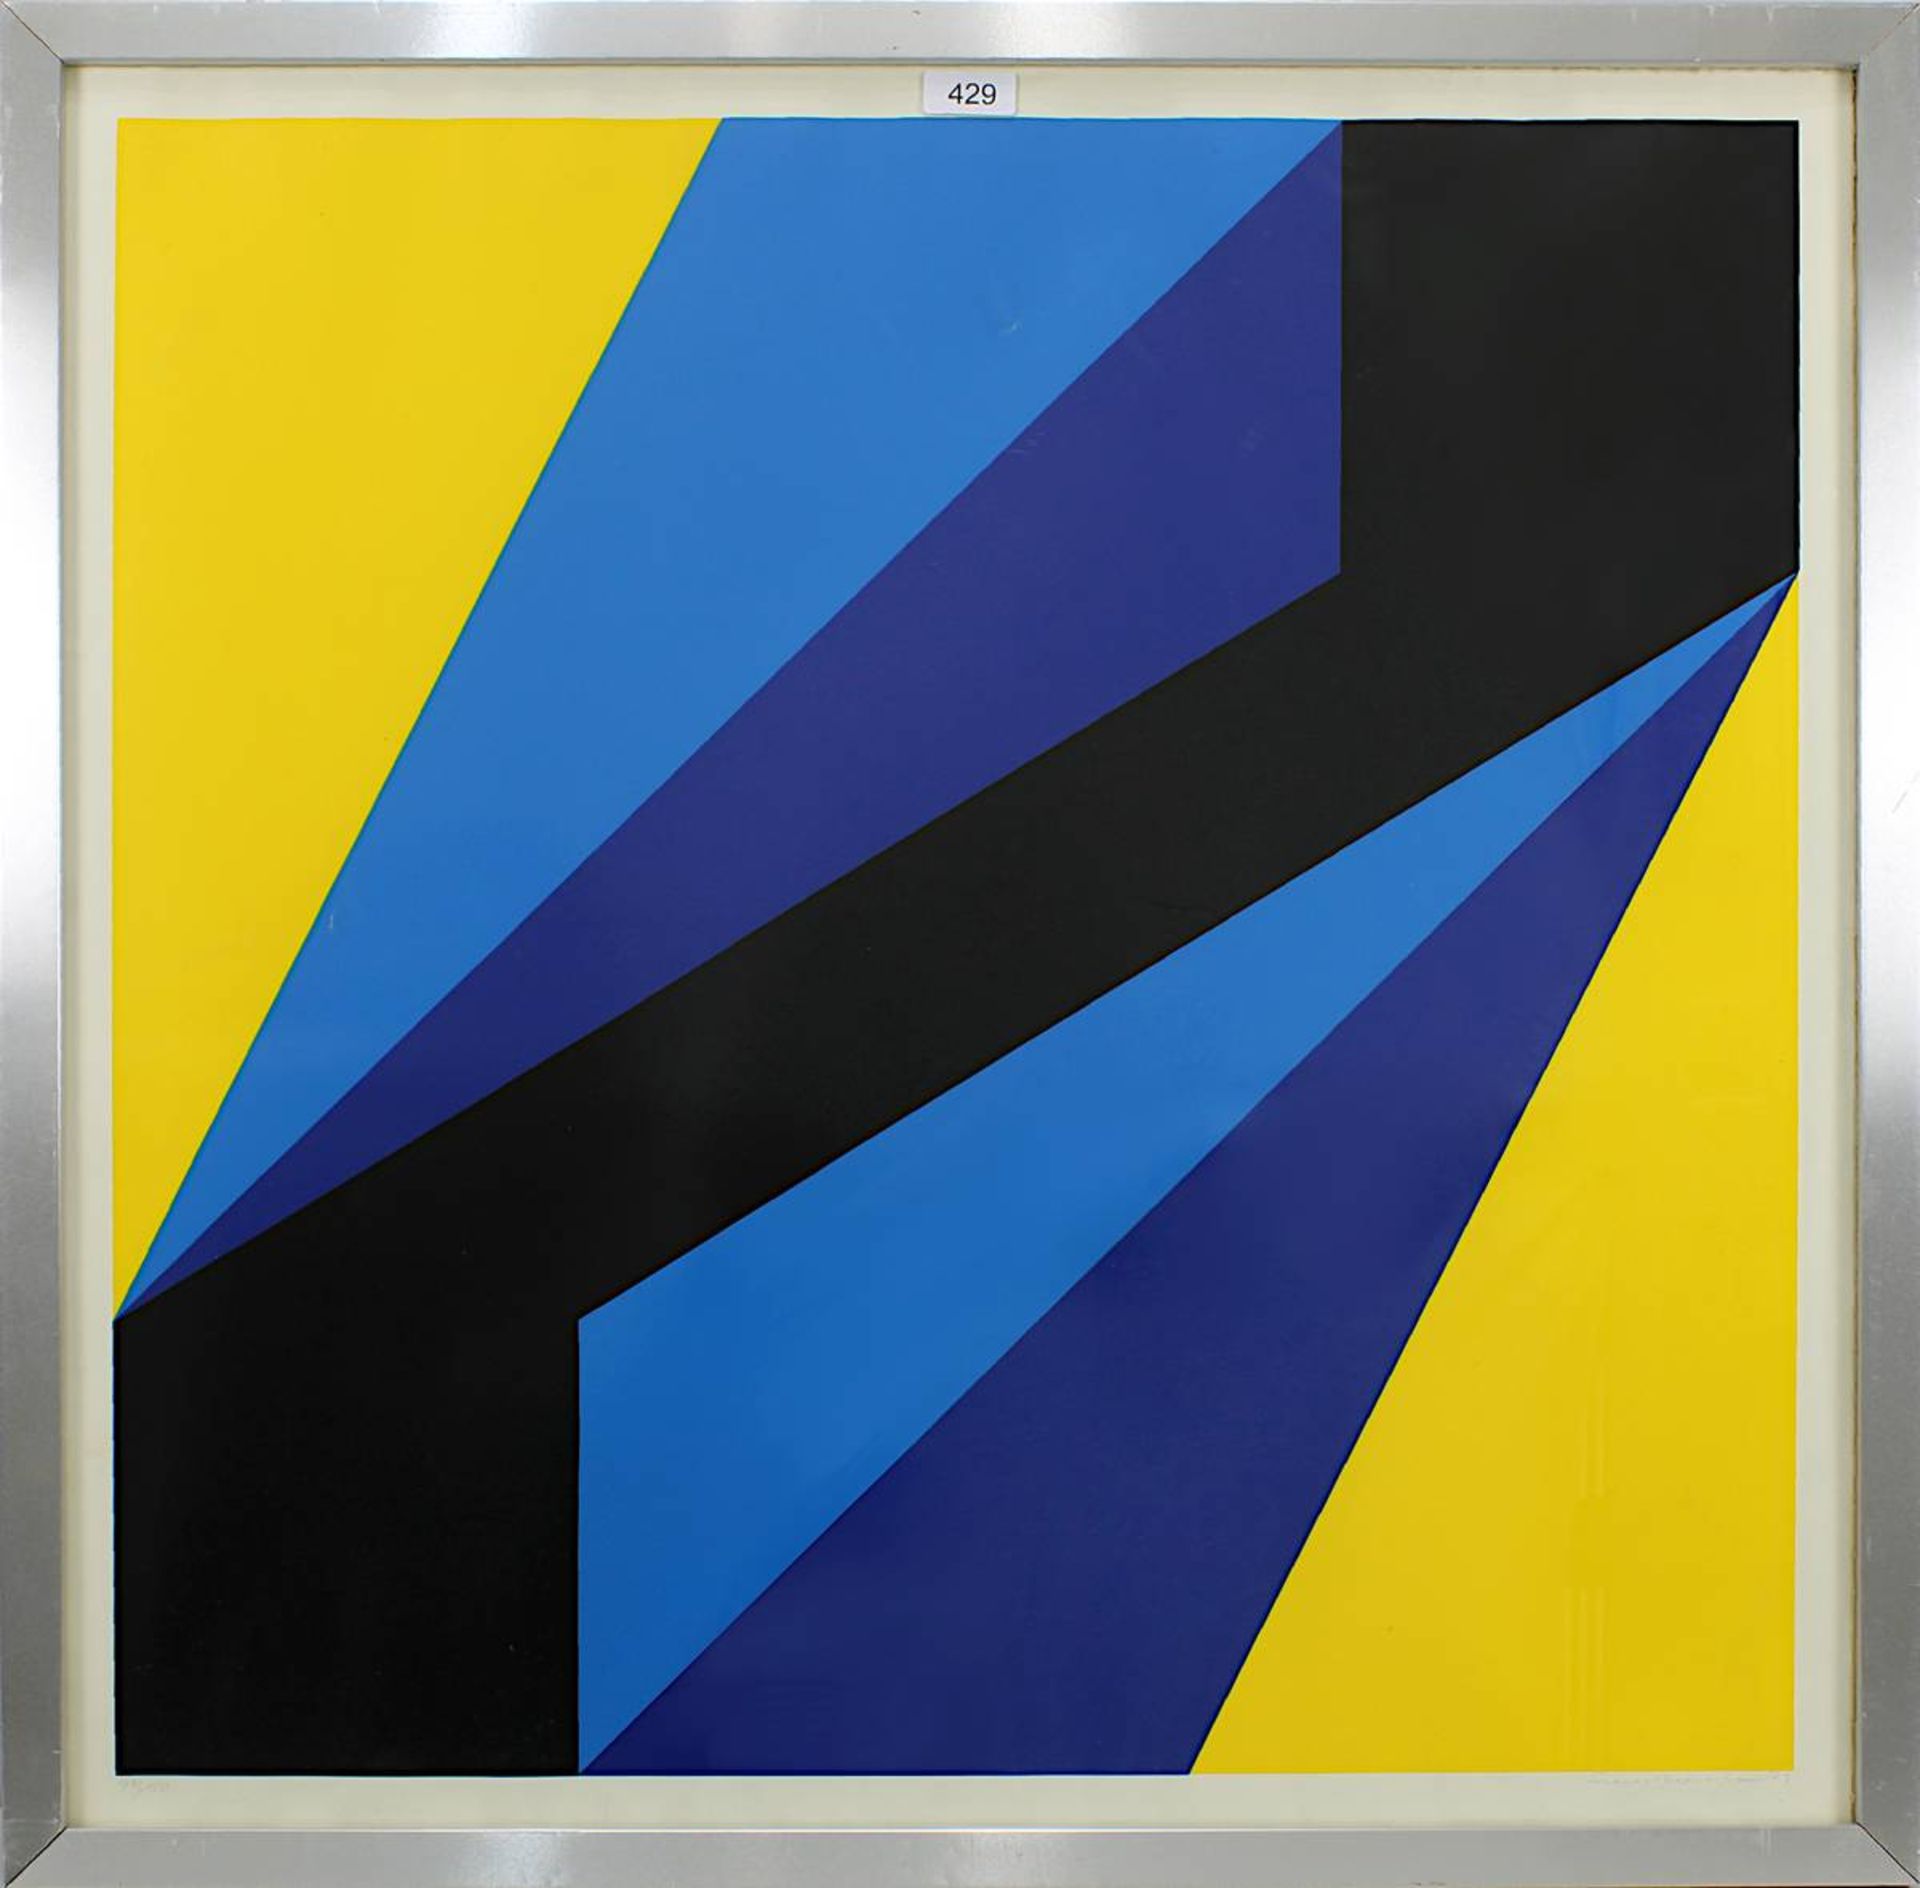 Sundhaußen, Helmut (Düsseldorf 1935 - 2018 Düsseldorf), Geometrische Komposition, Farbsiebdruck,